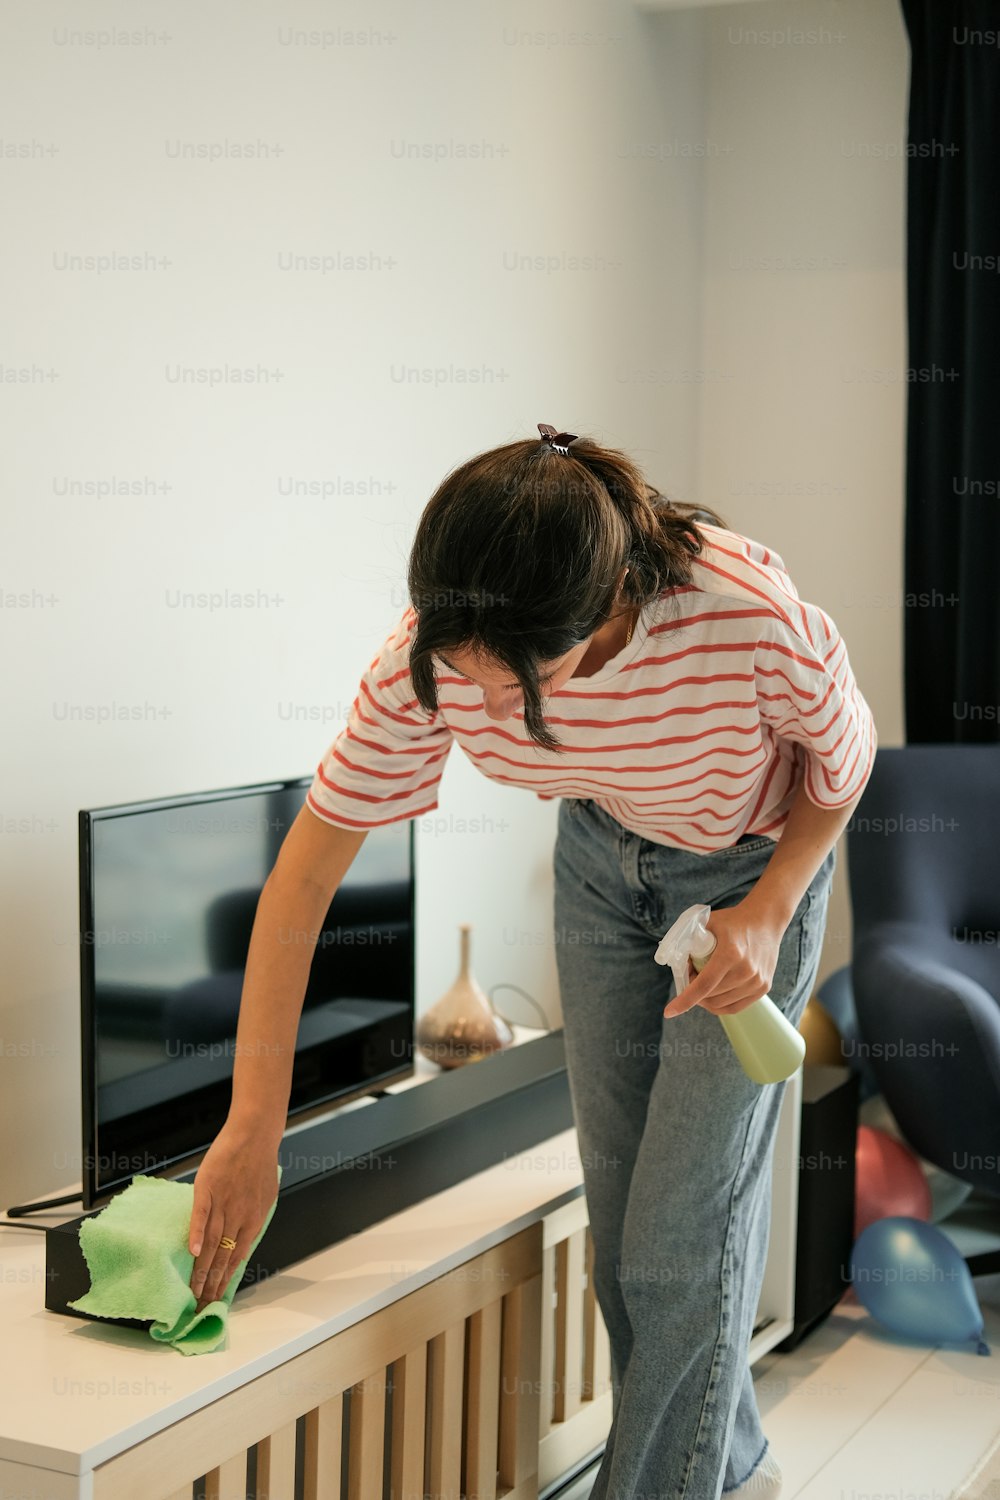 Une femme nettoie un téléviseur avec un chiffon